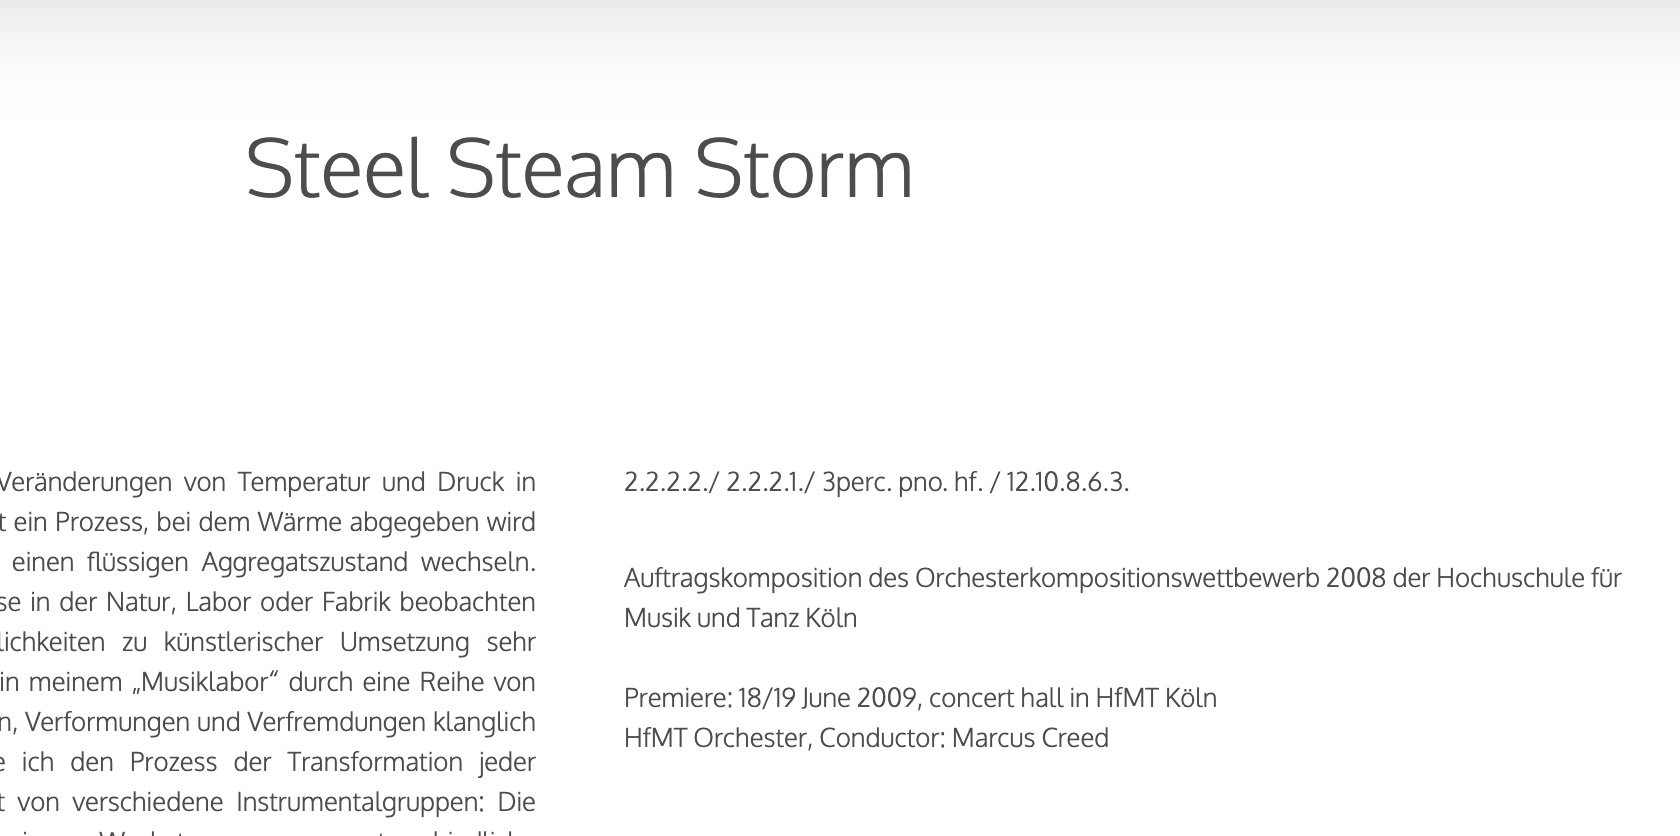 Steel Steam Storm